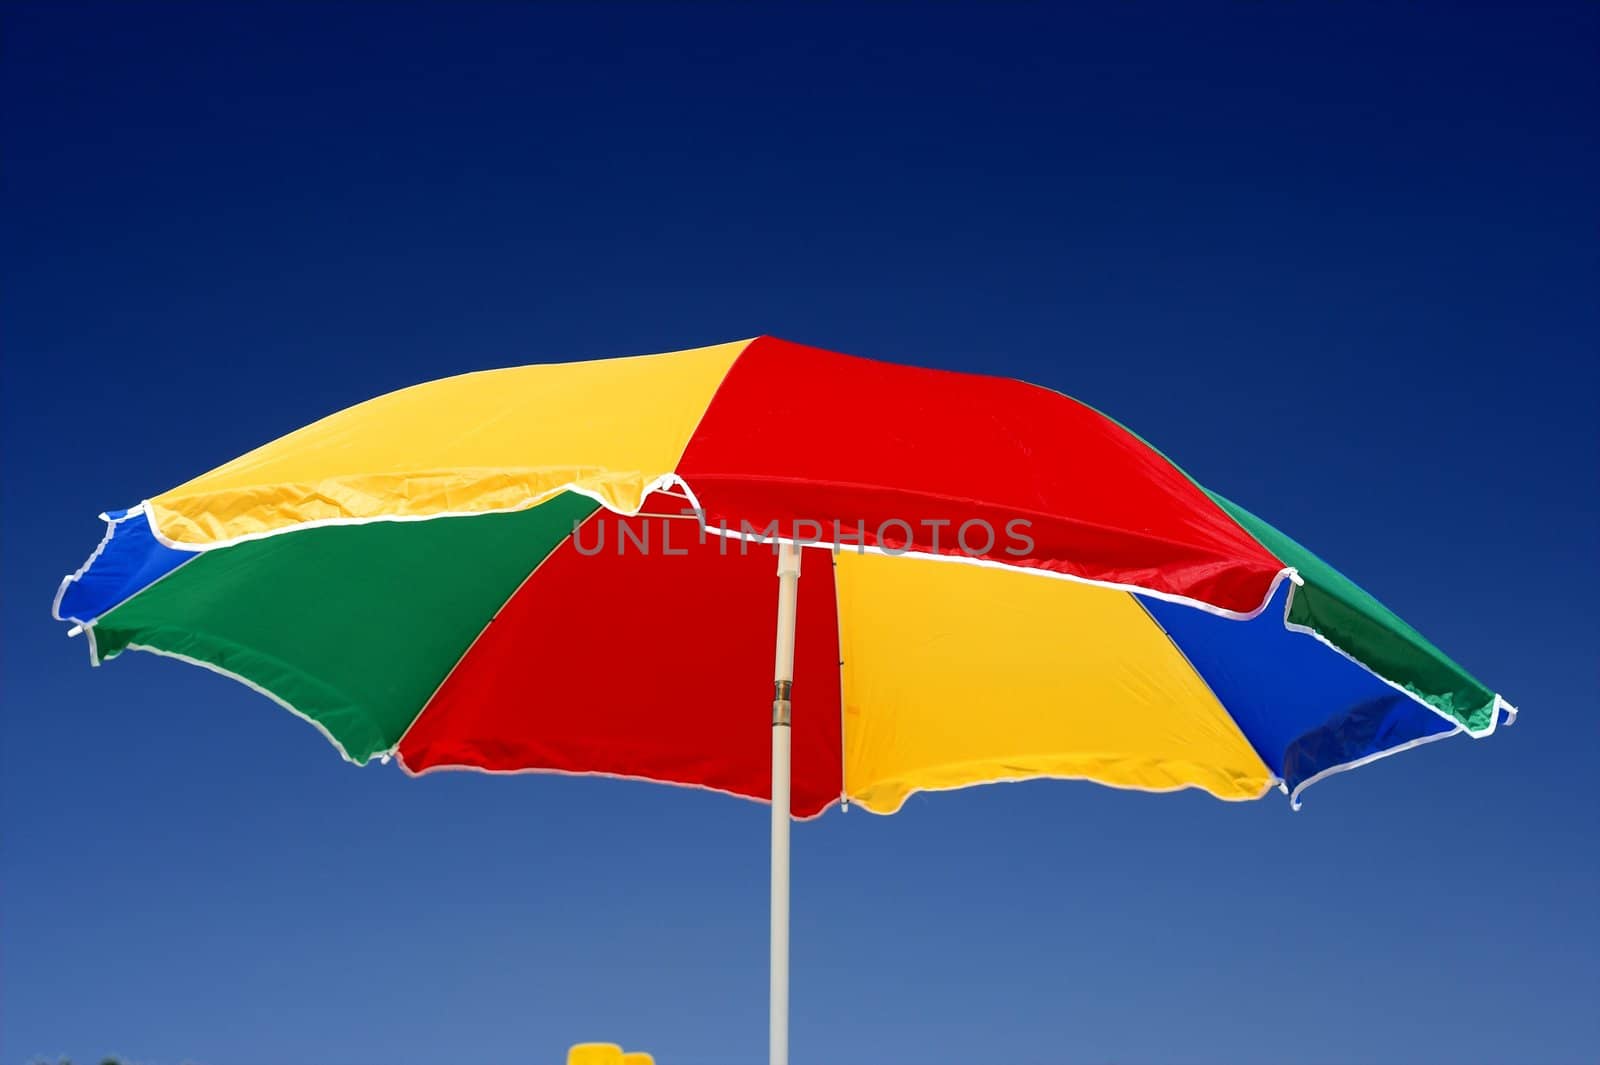  beach umbrella and deep blue sky